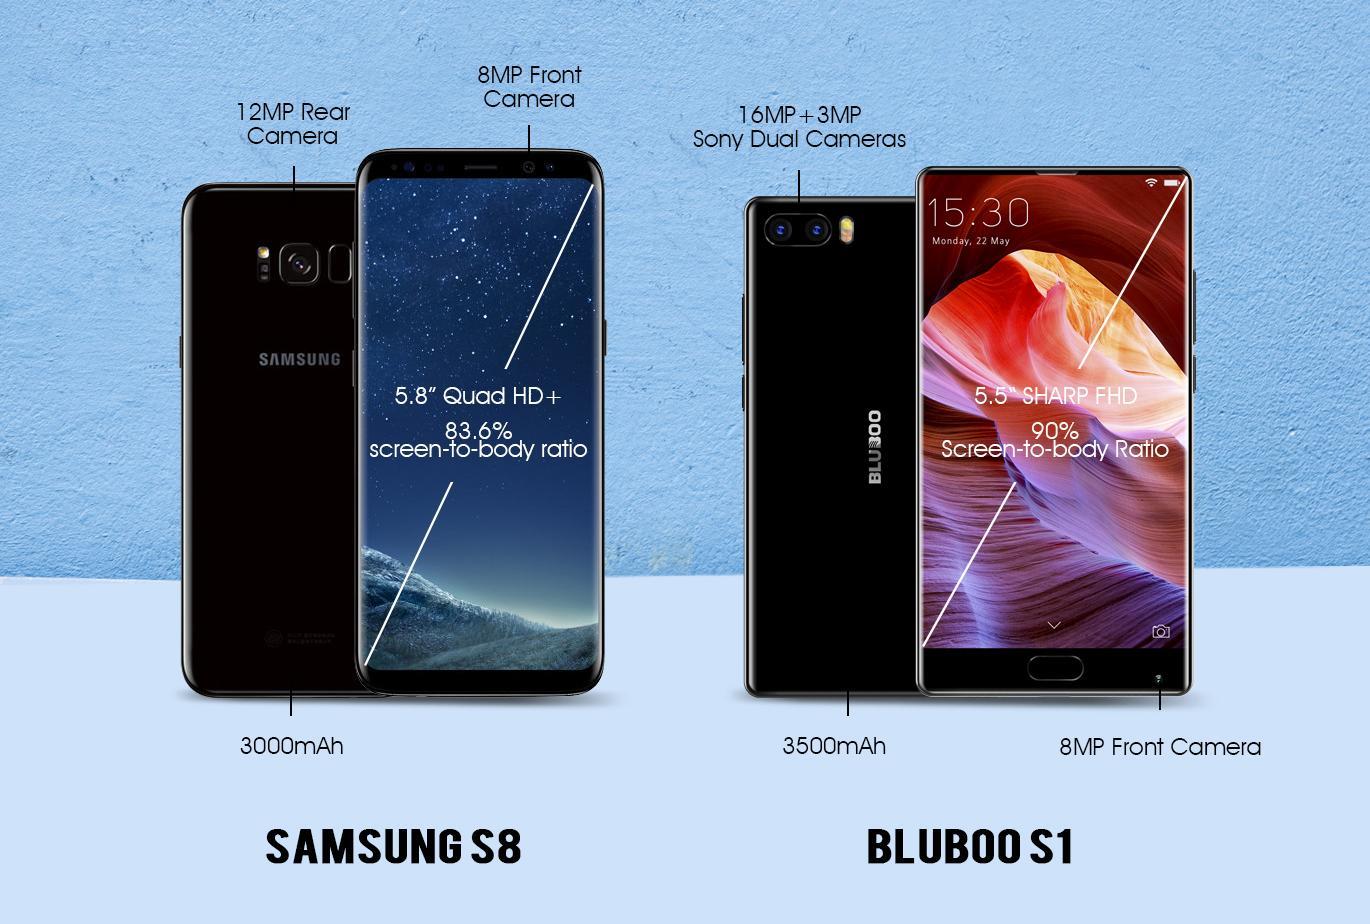 BLUBOO S1 Vs Samsung S8 Comparison